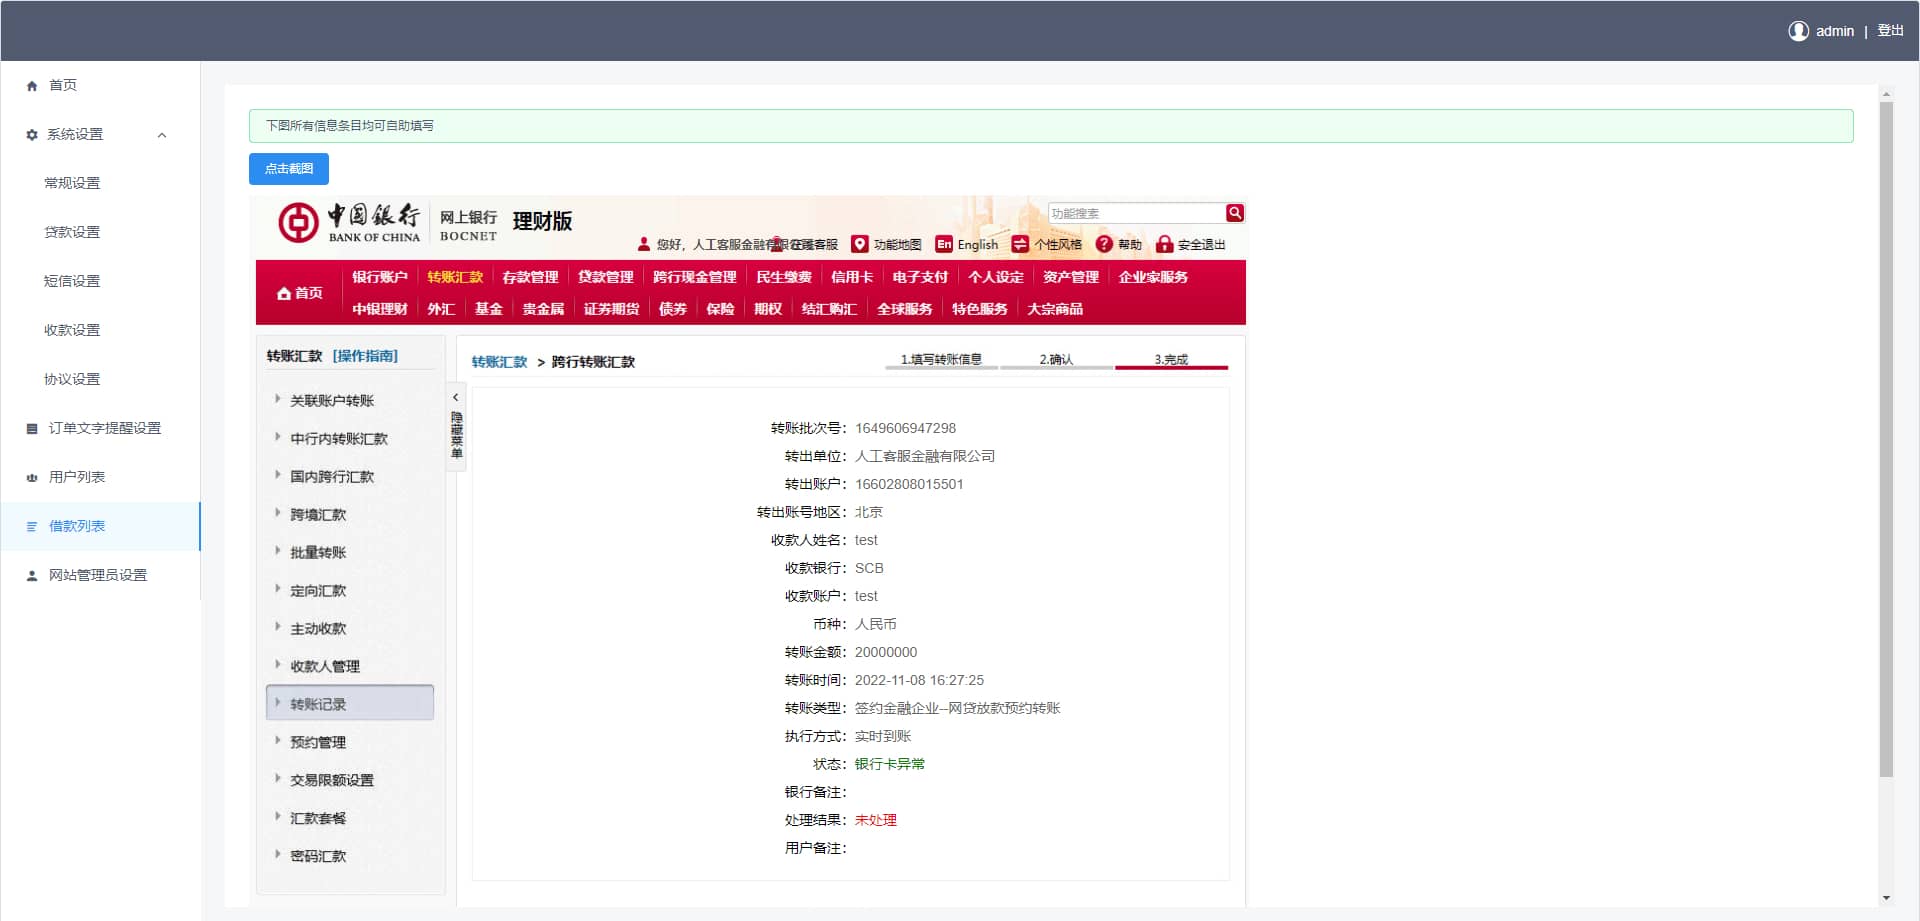 D1440 开源版中文和越南语贷款源码 贷款平台下载 小额贷款系统 贷款源码运营版插图5